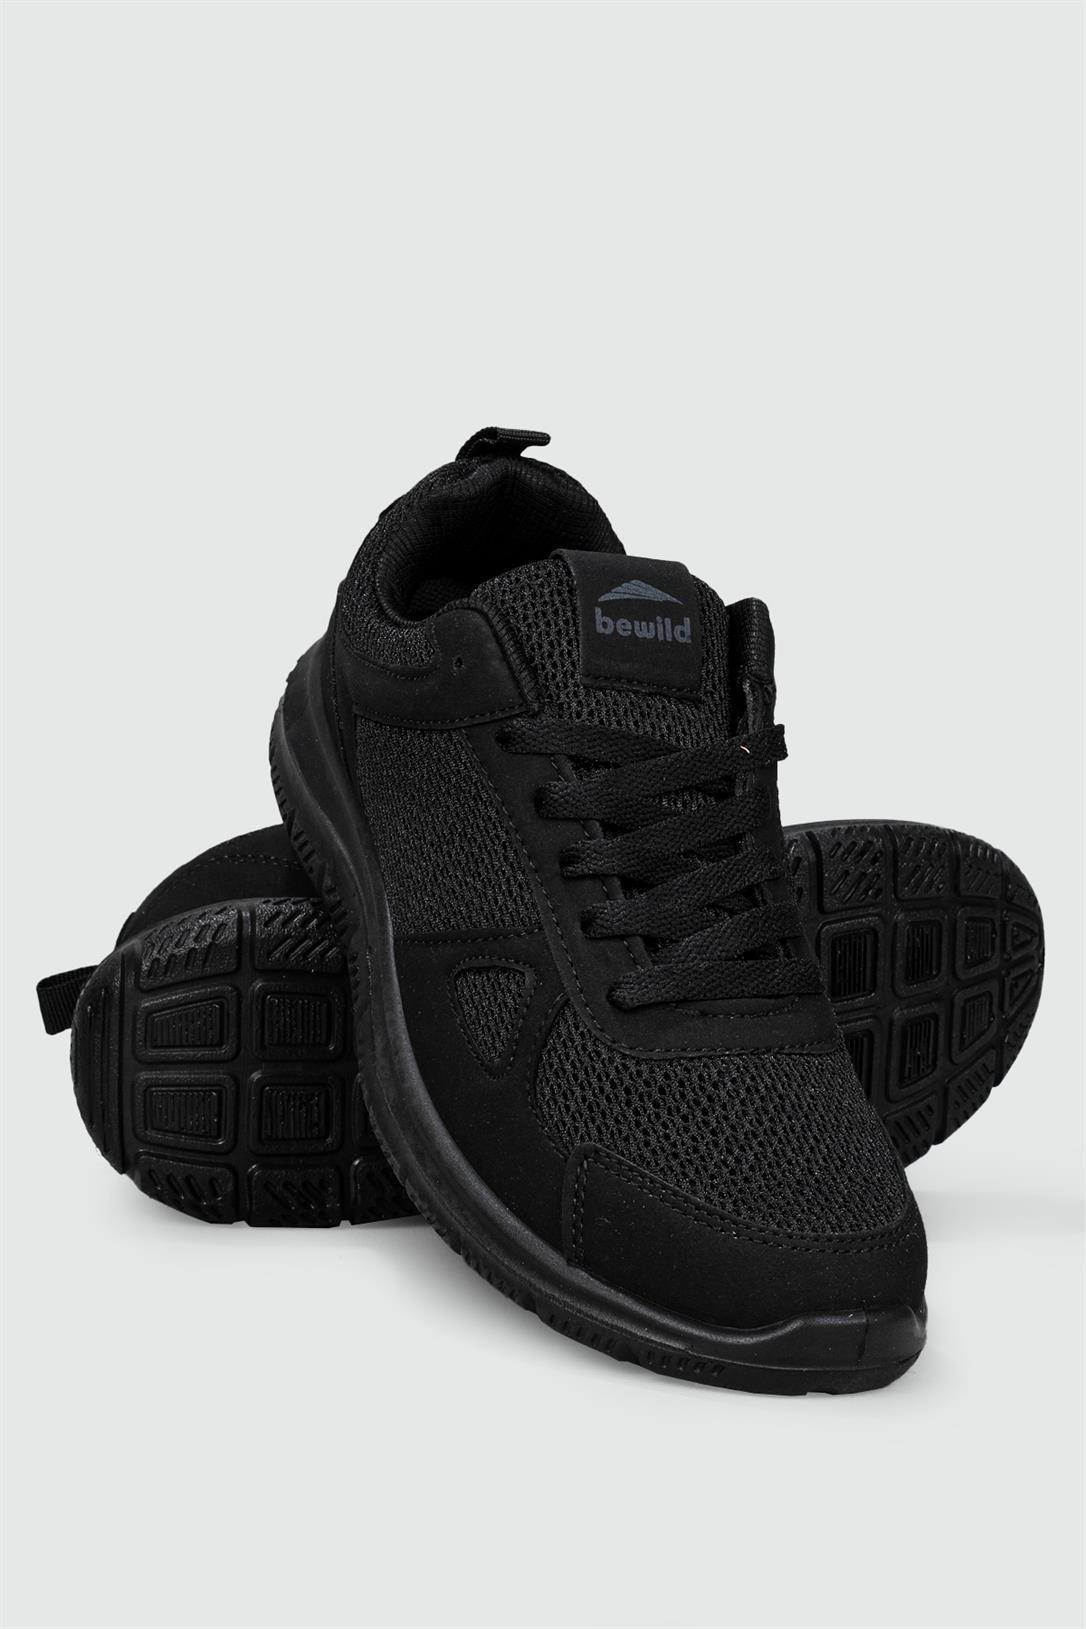 Beınsteps Rahat Nefes Alır Bağcıklı Siyah Erkek Spor Ayakkabı 40131 |  Ayakkabı City